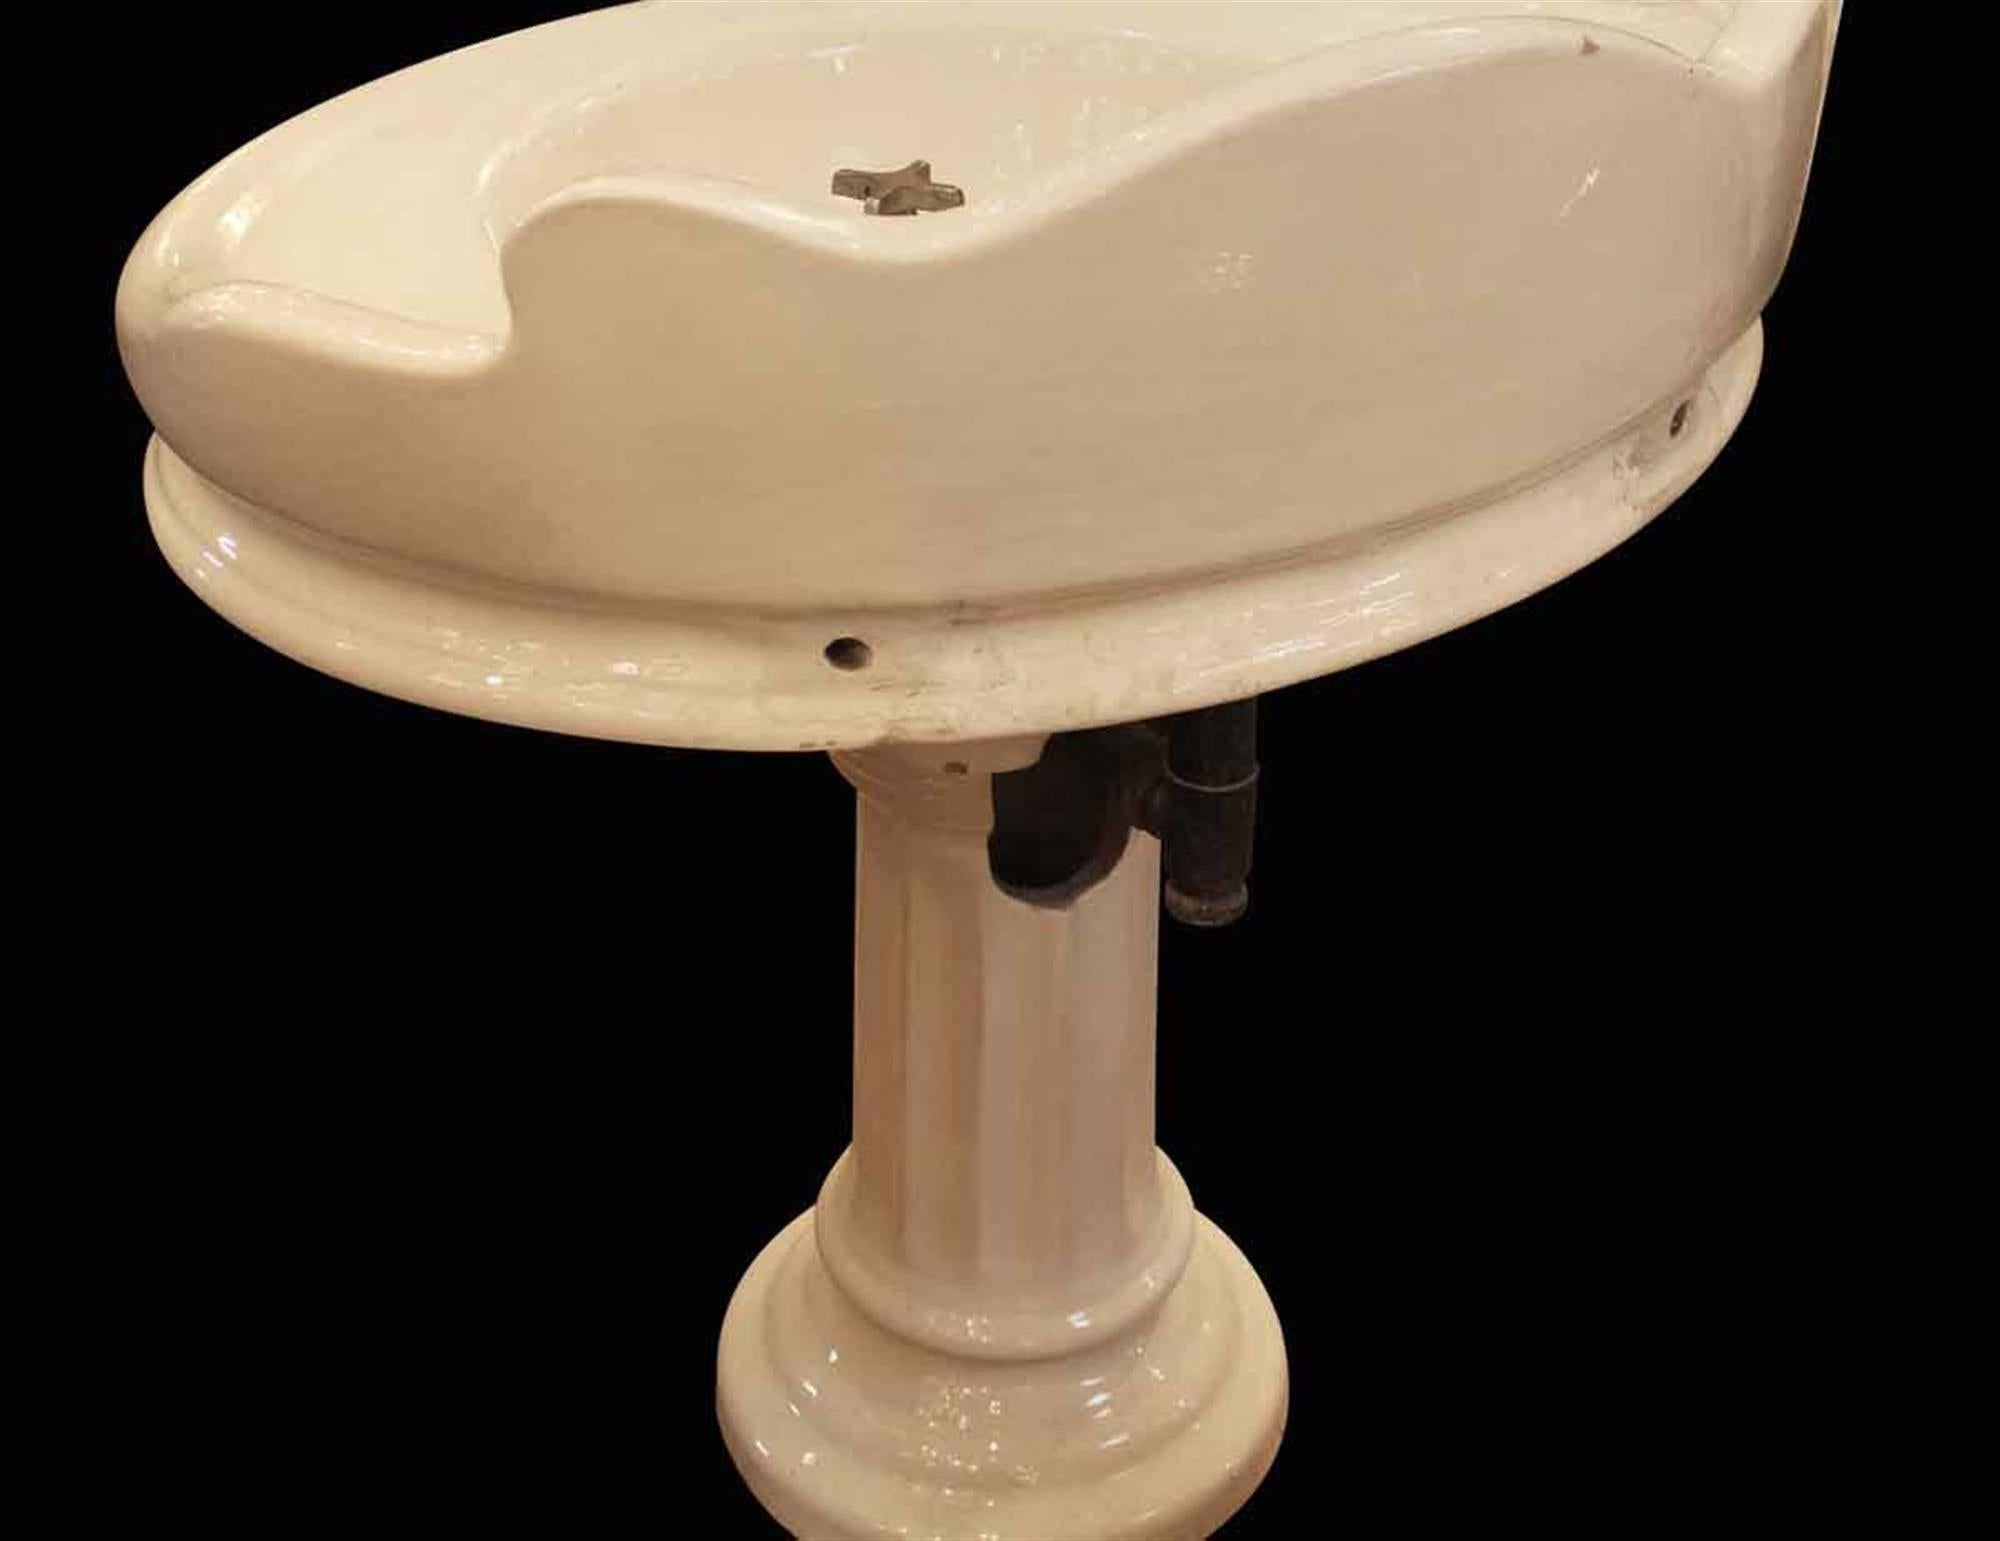 Industrial 1900s Earthenware Pedestal Oval Sink with Back Splash and Original Hardware